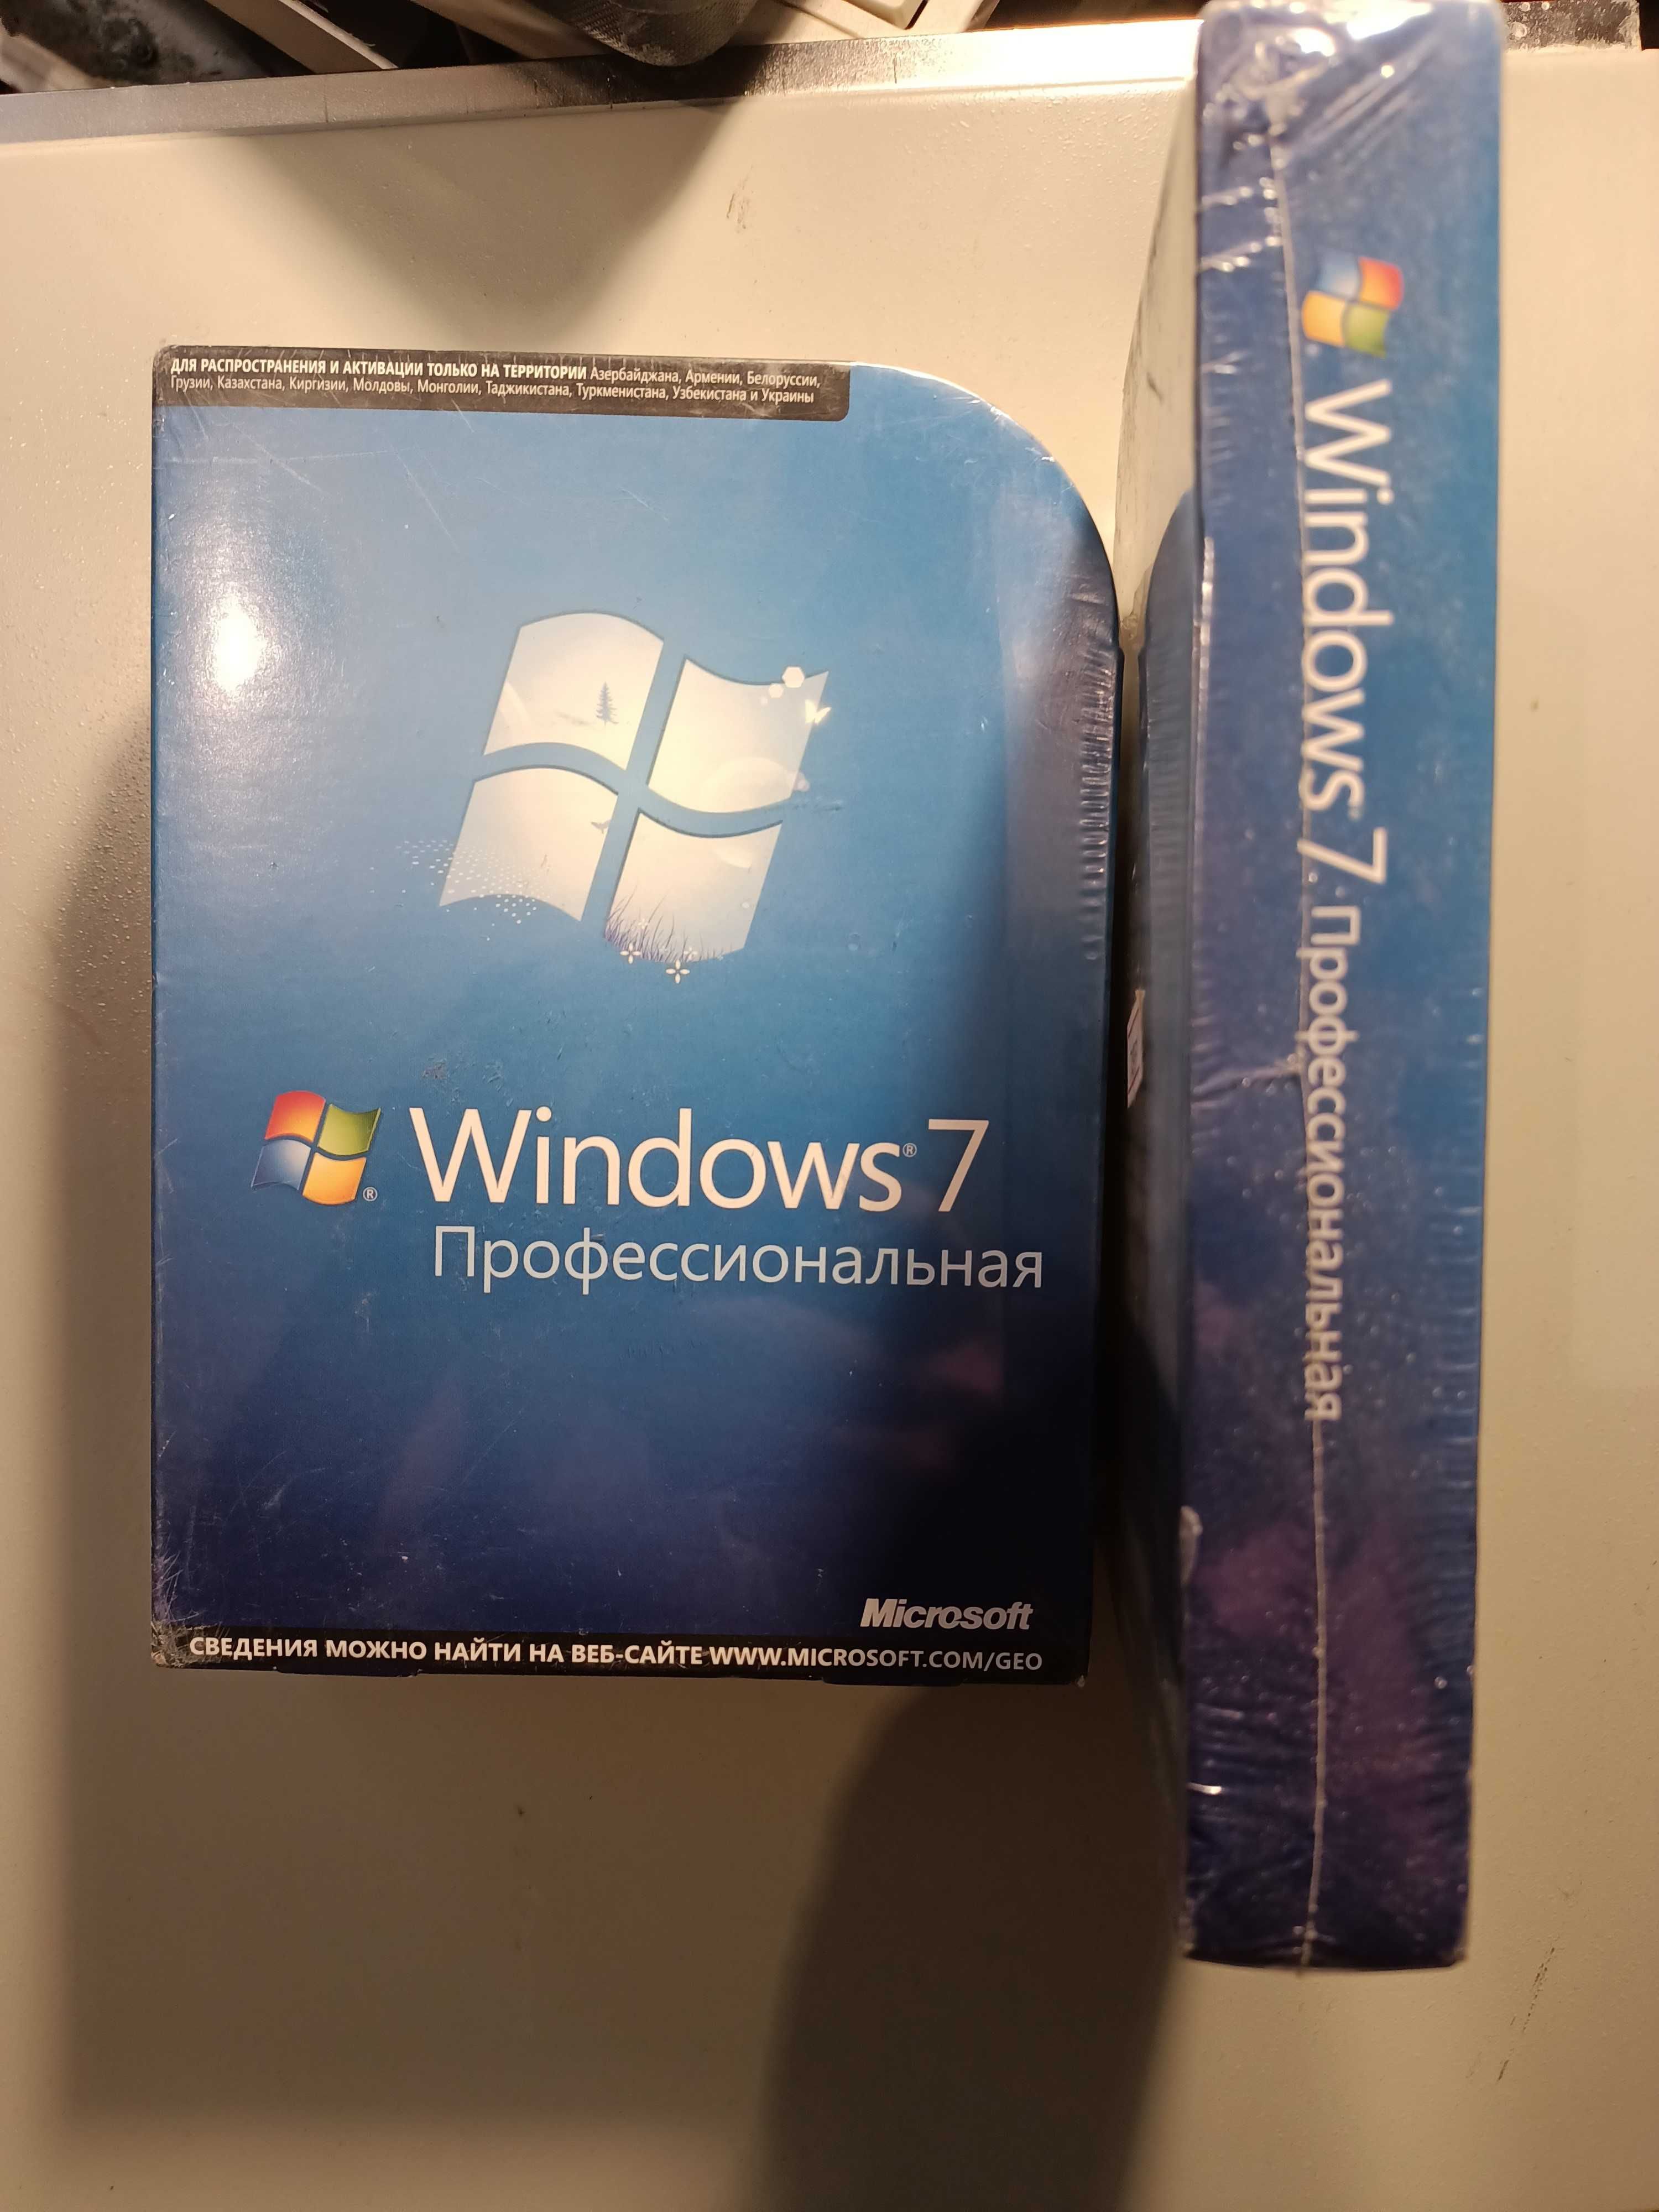 Продам лицензионные "Windows 7". Новые!